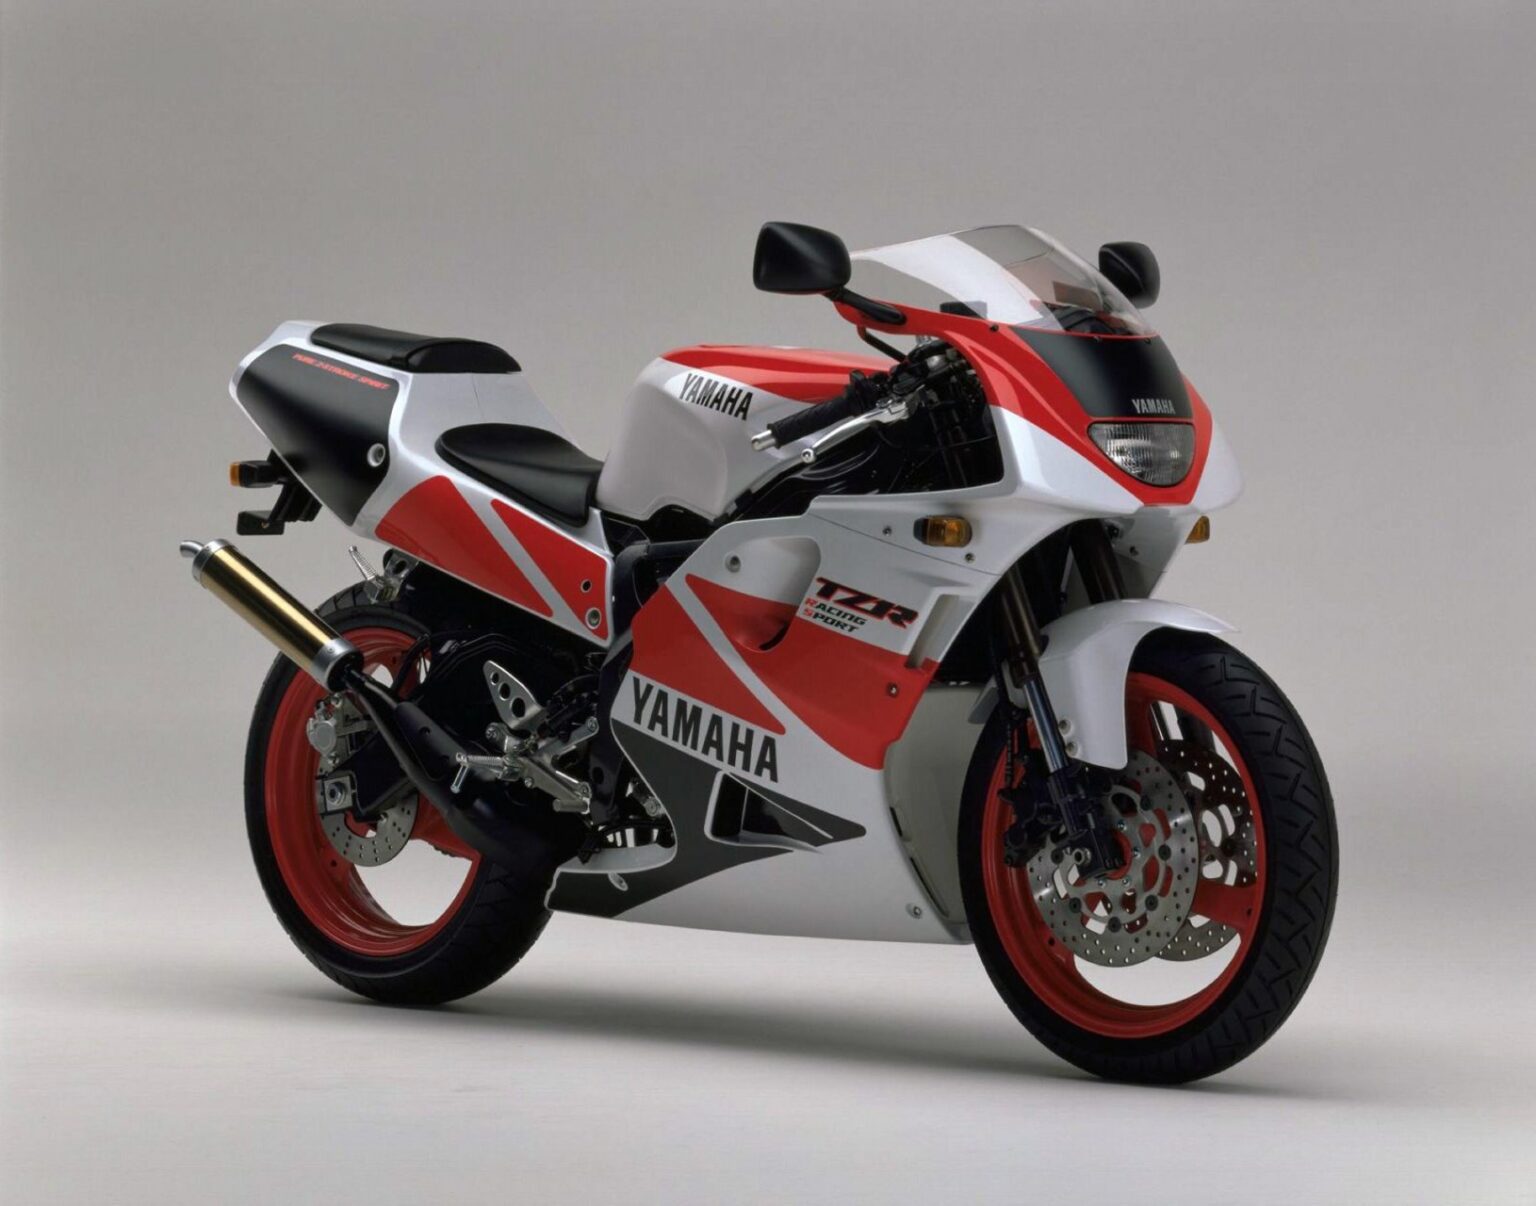 Manual de Moto Yamaha TZR250 DESCARGAR GRATIS